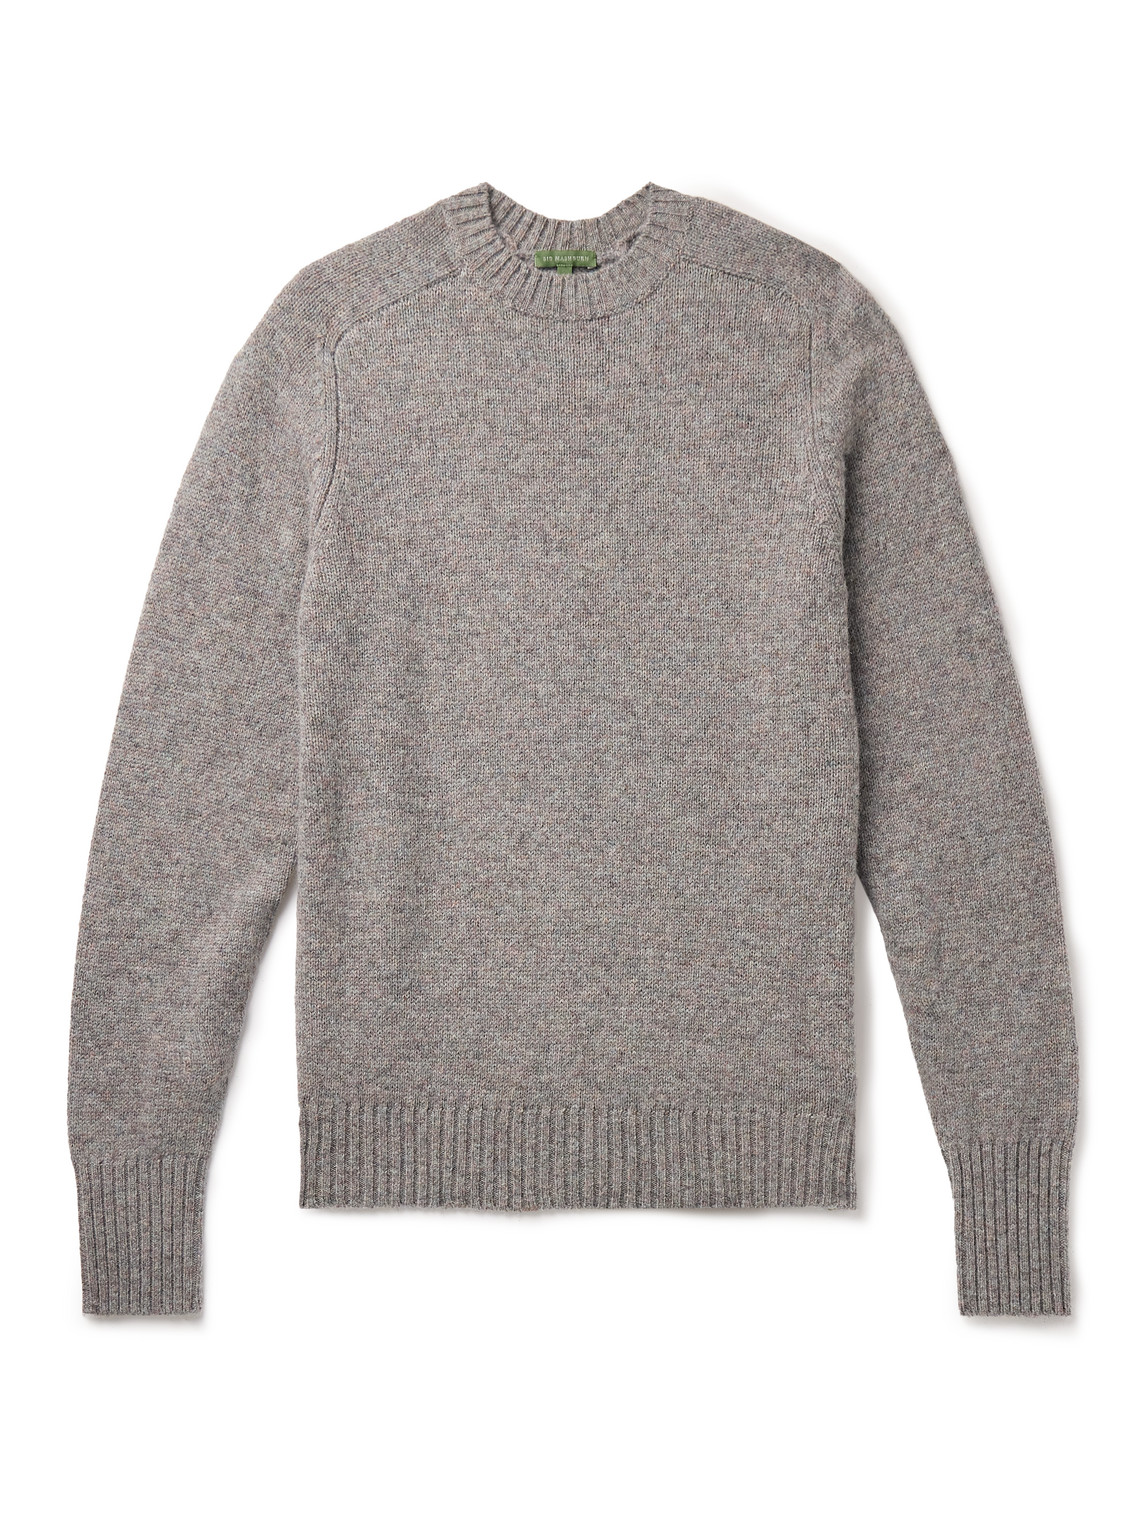 Sid Mashburn Knitted Wool Jumper In Grey